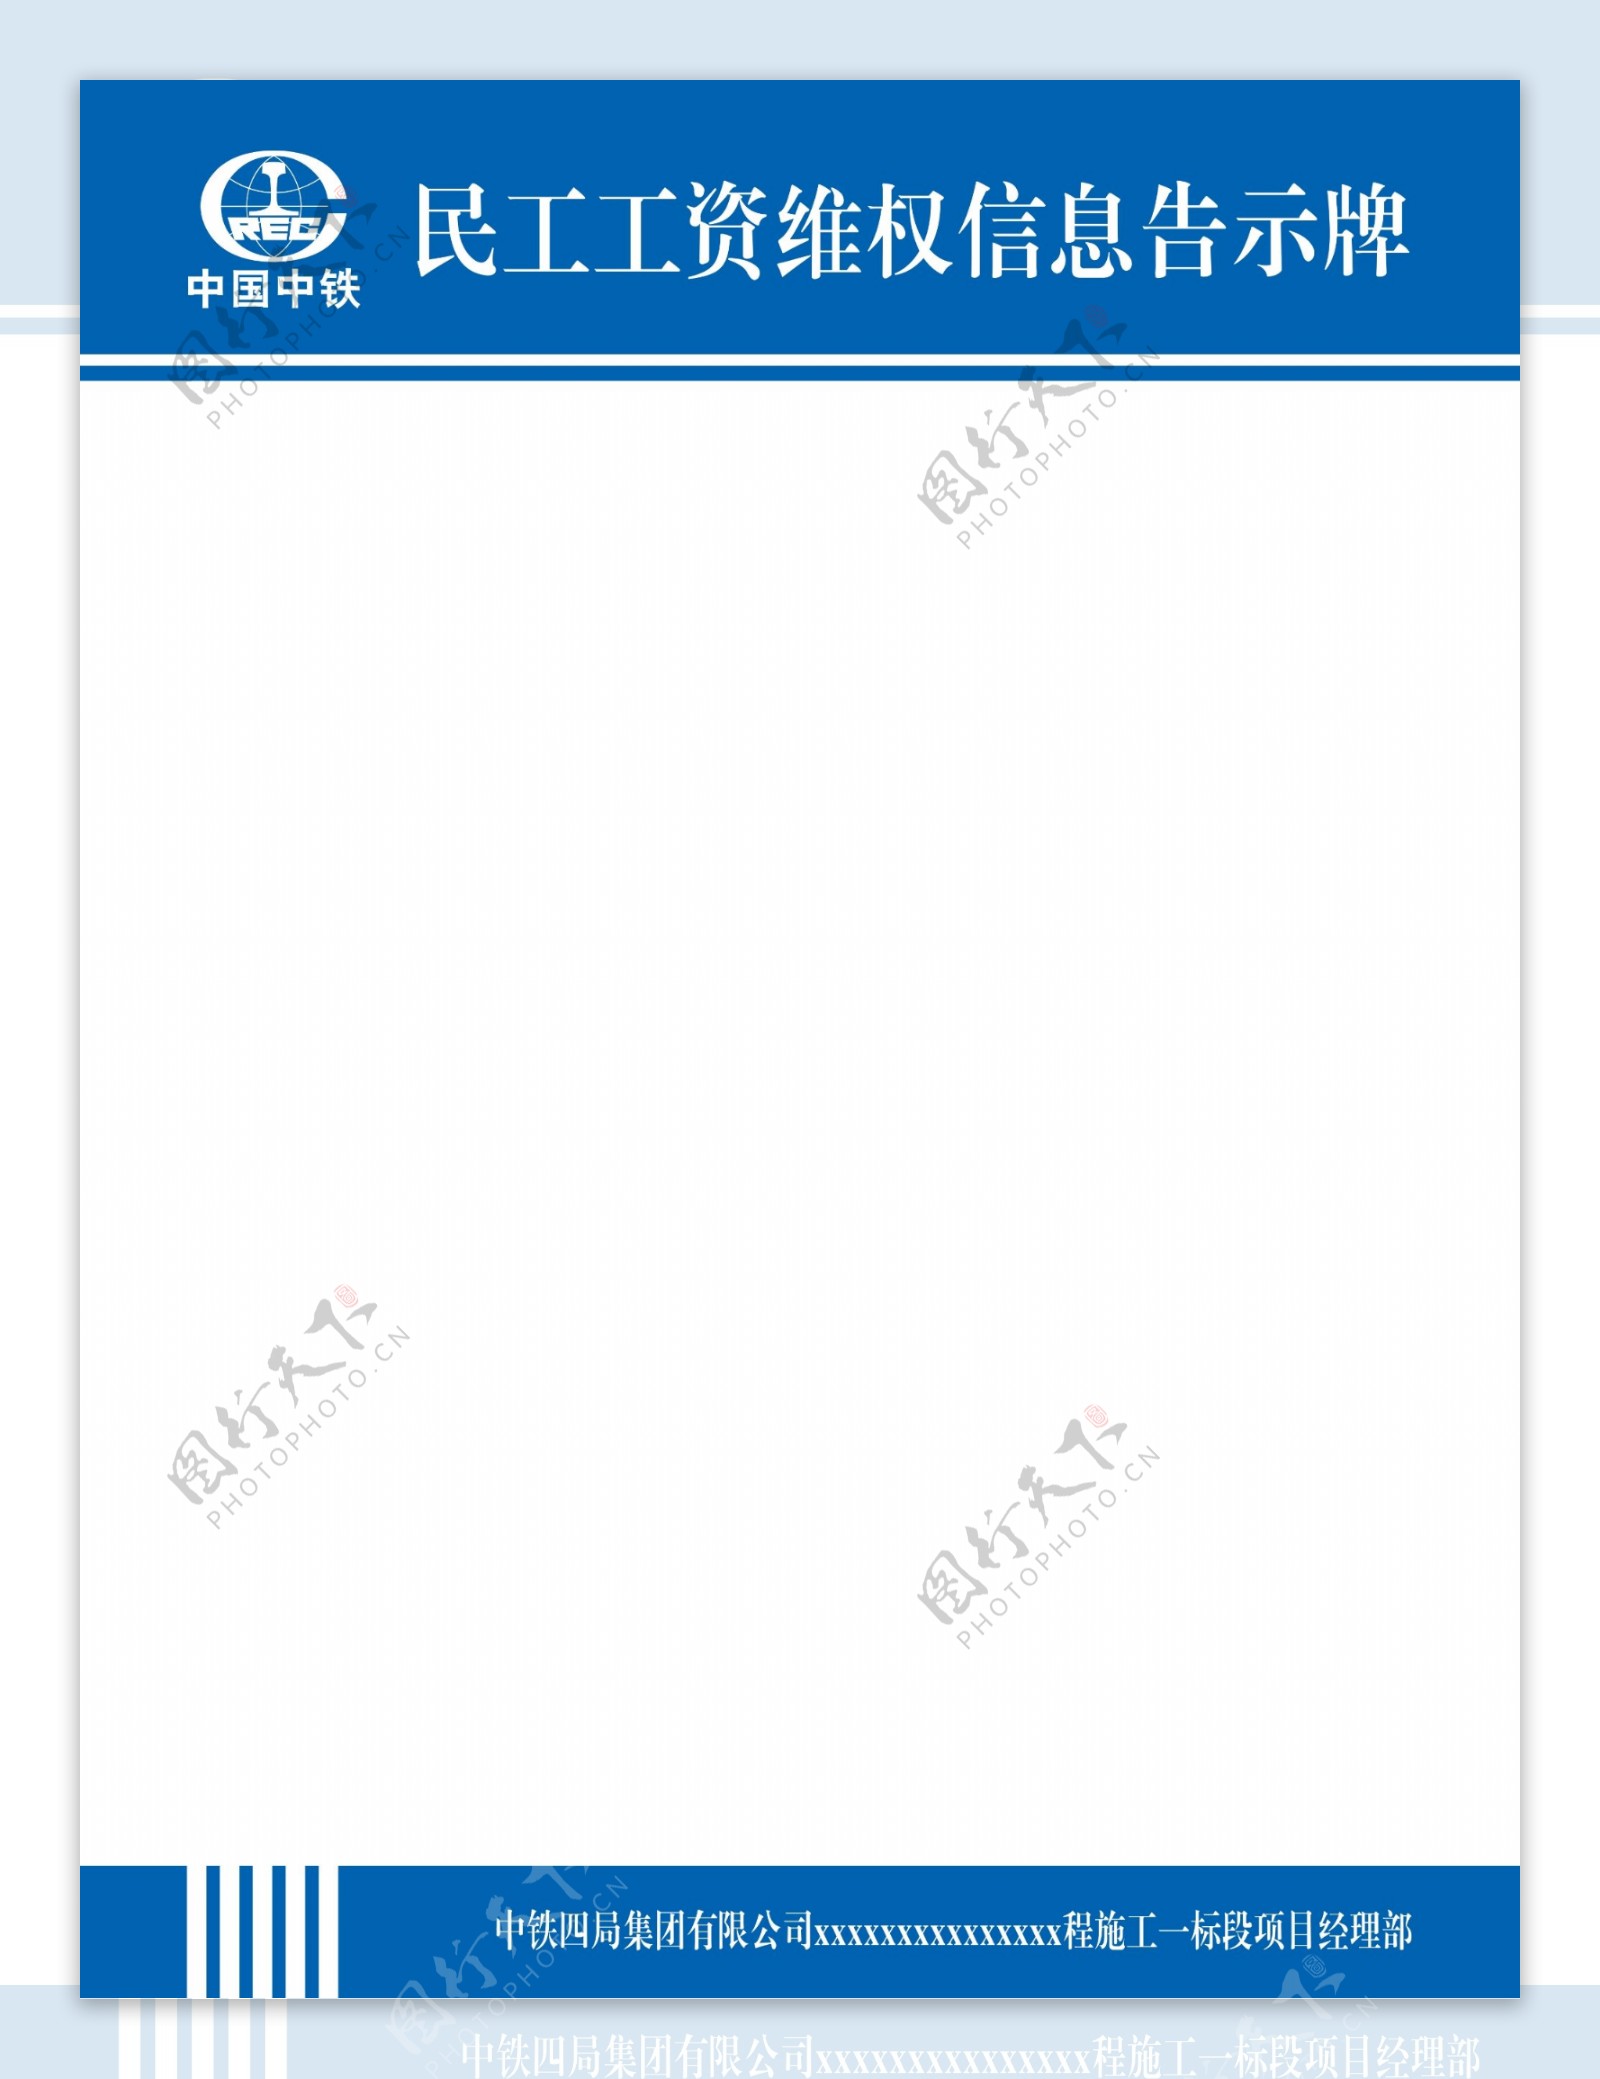 中国中铁制度牌模板图片